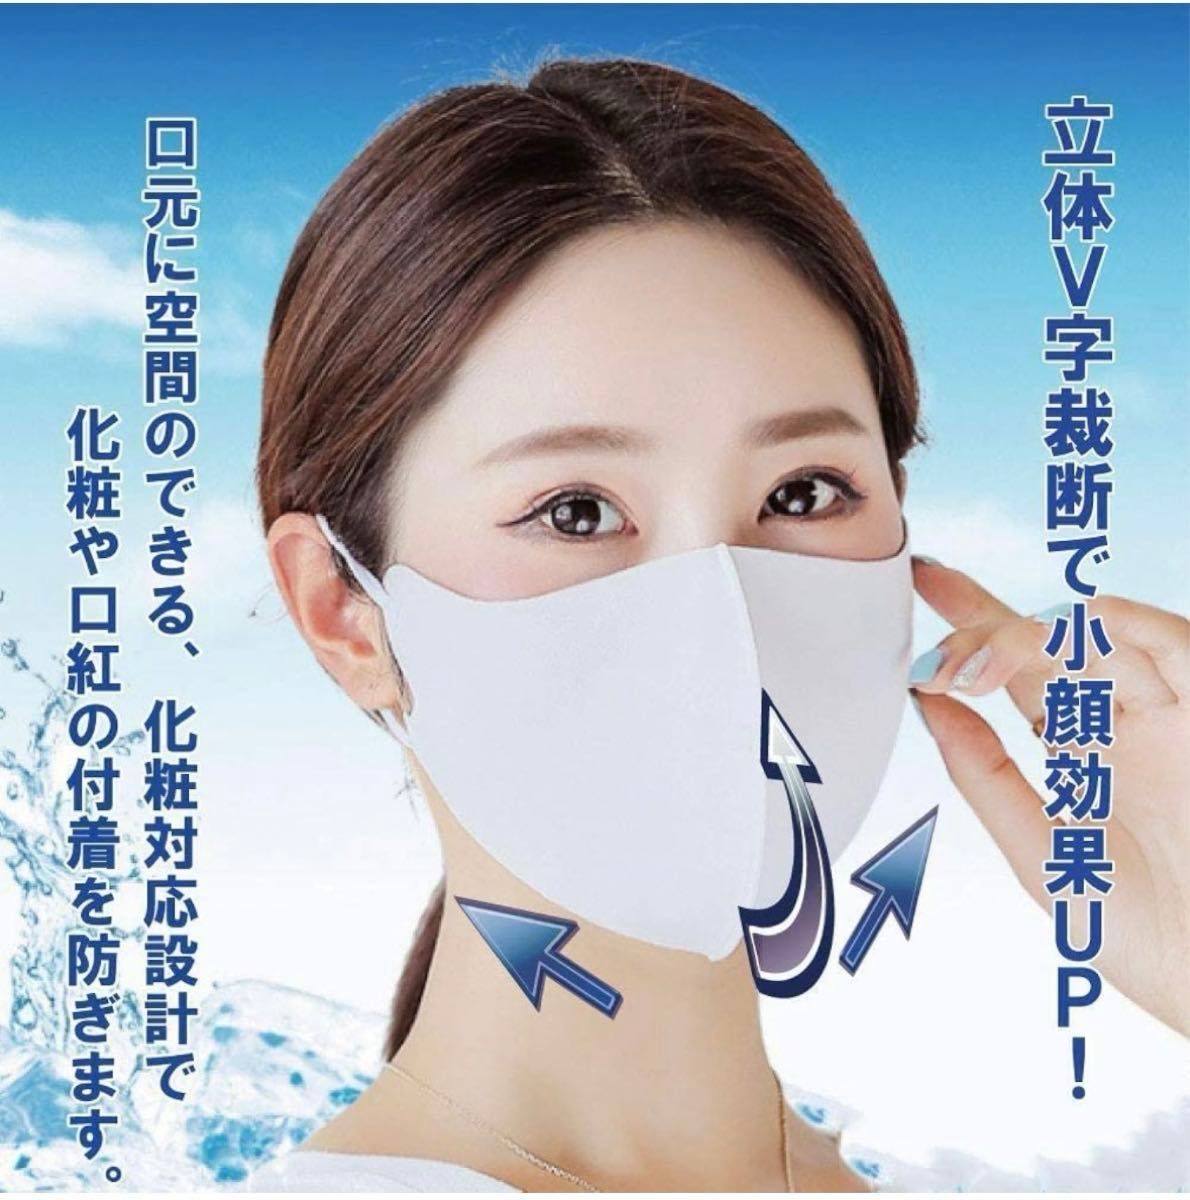 マスク 洗える おしゃれなマスク UVカット 夏用クールマスク 耳が痛くない 耳紐アジャスター付き 個別包装 10枚入り M